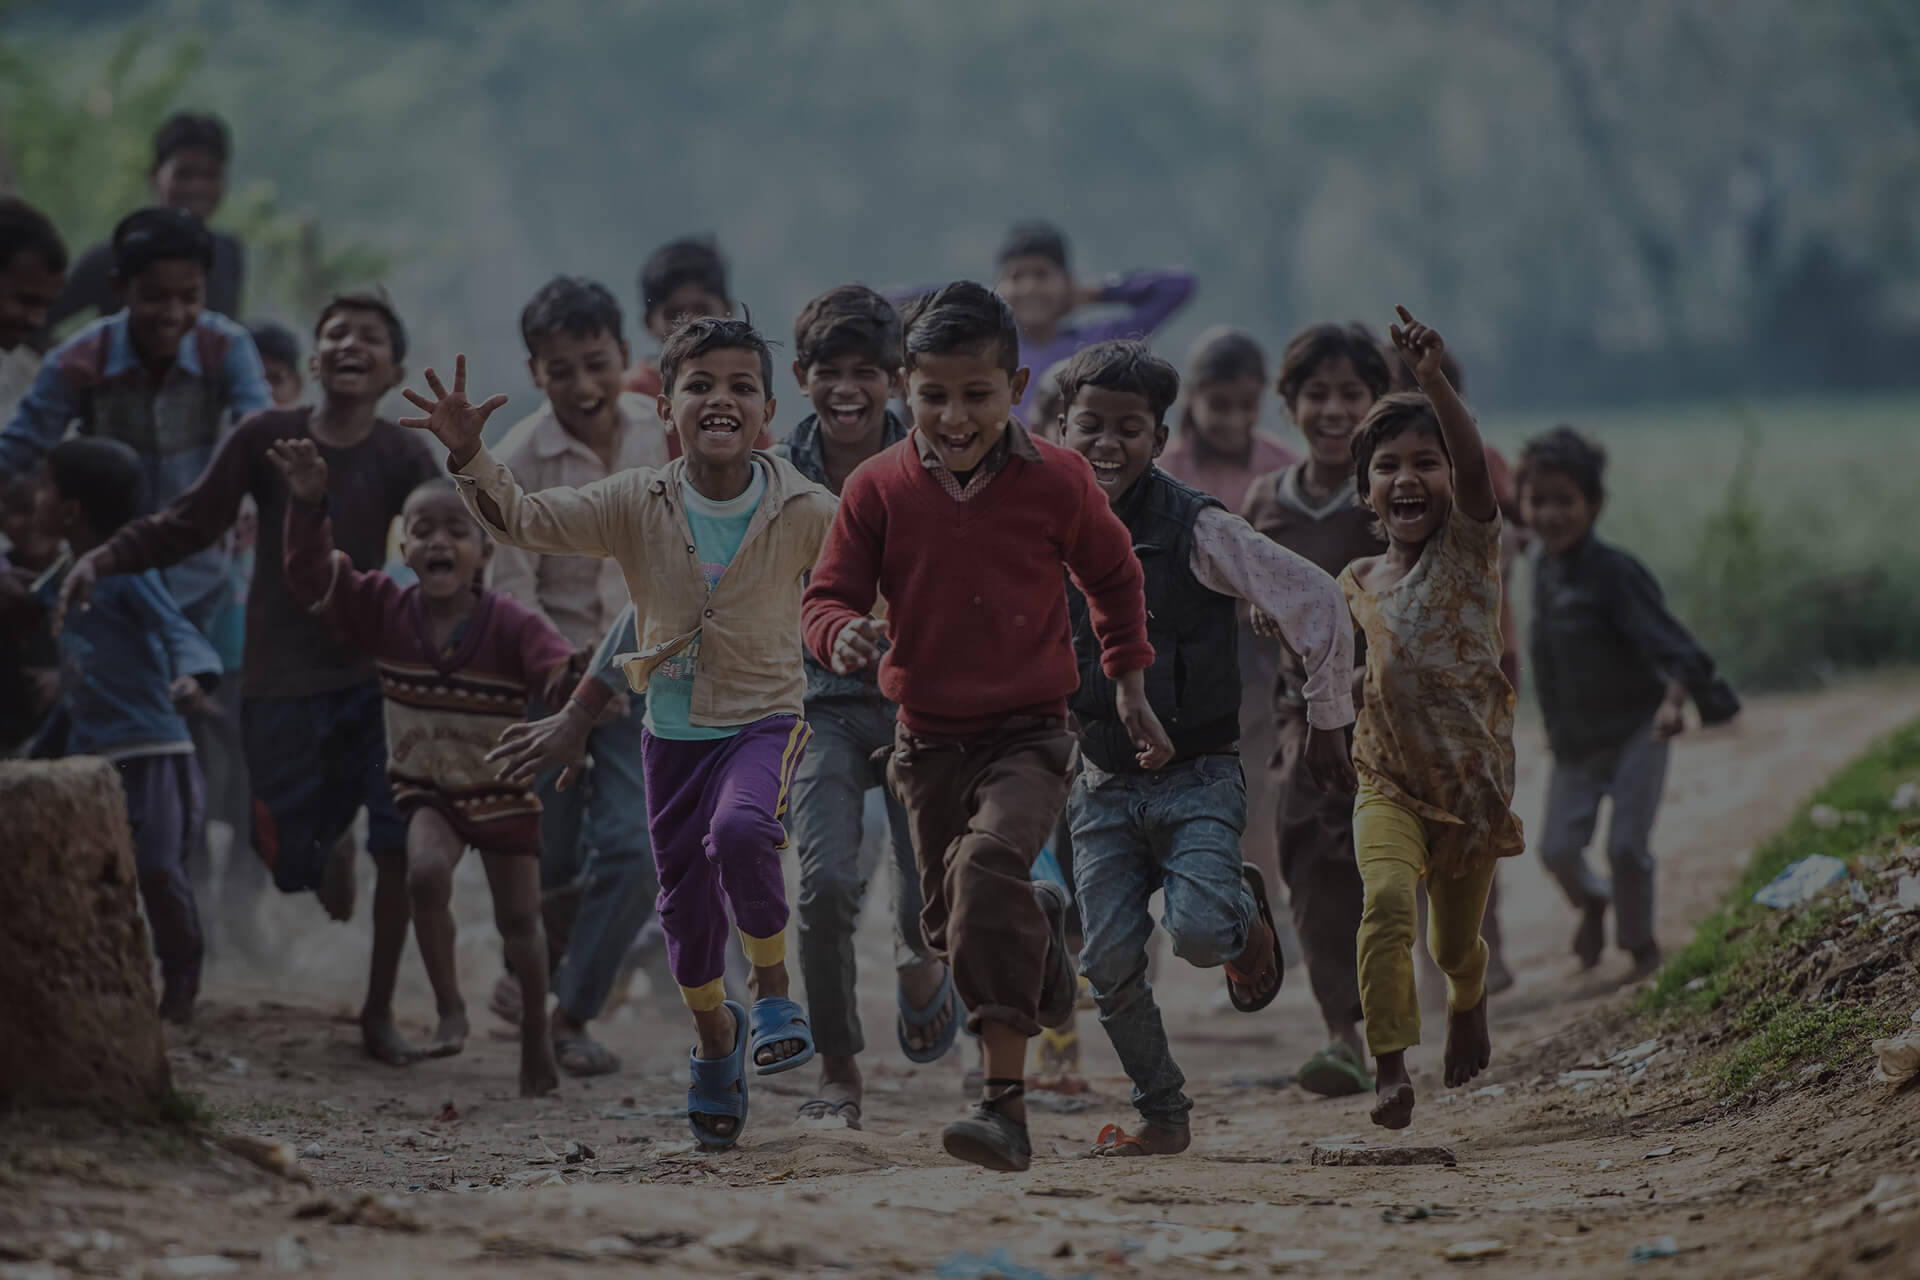 Image of children running